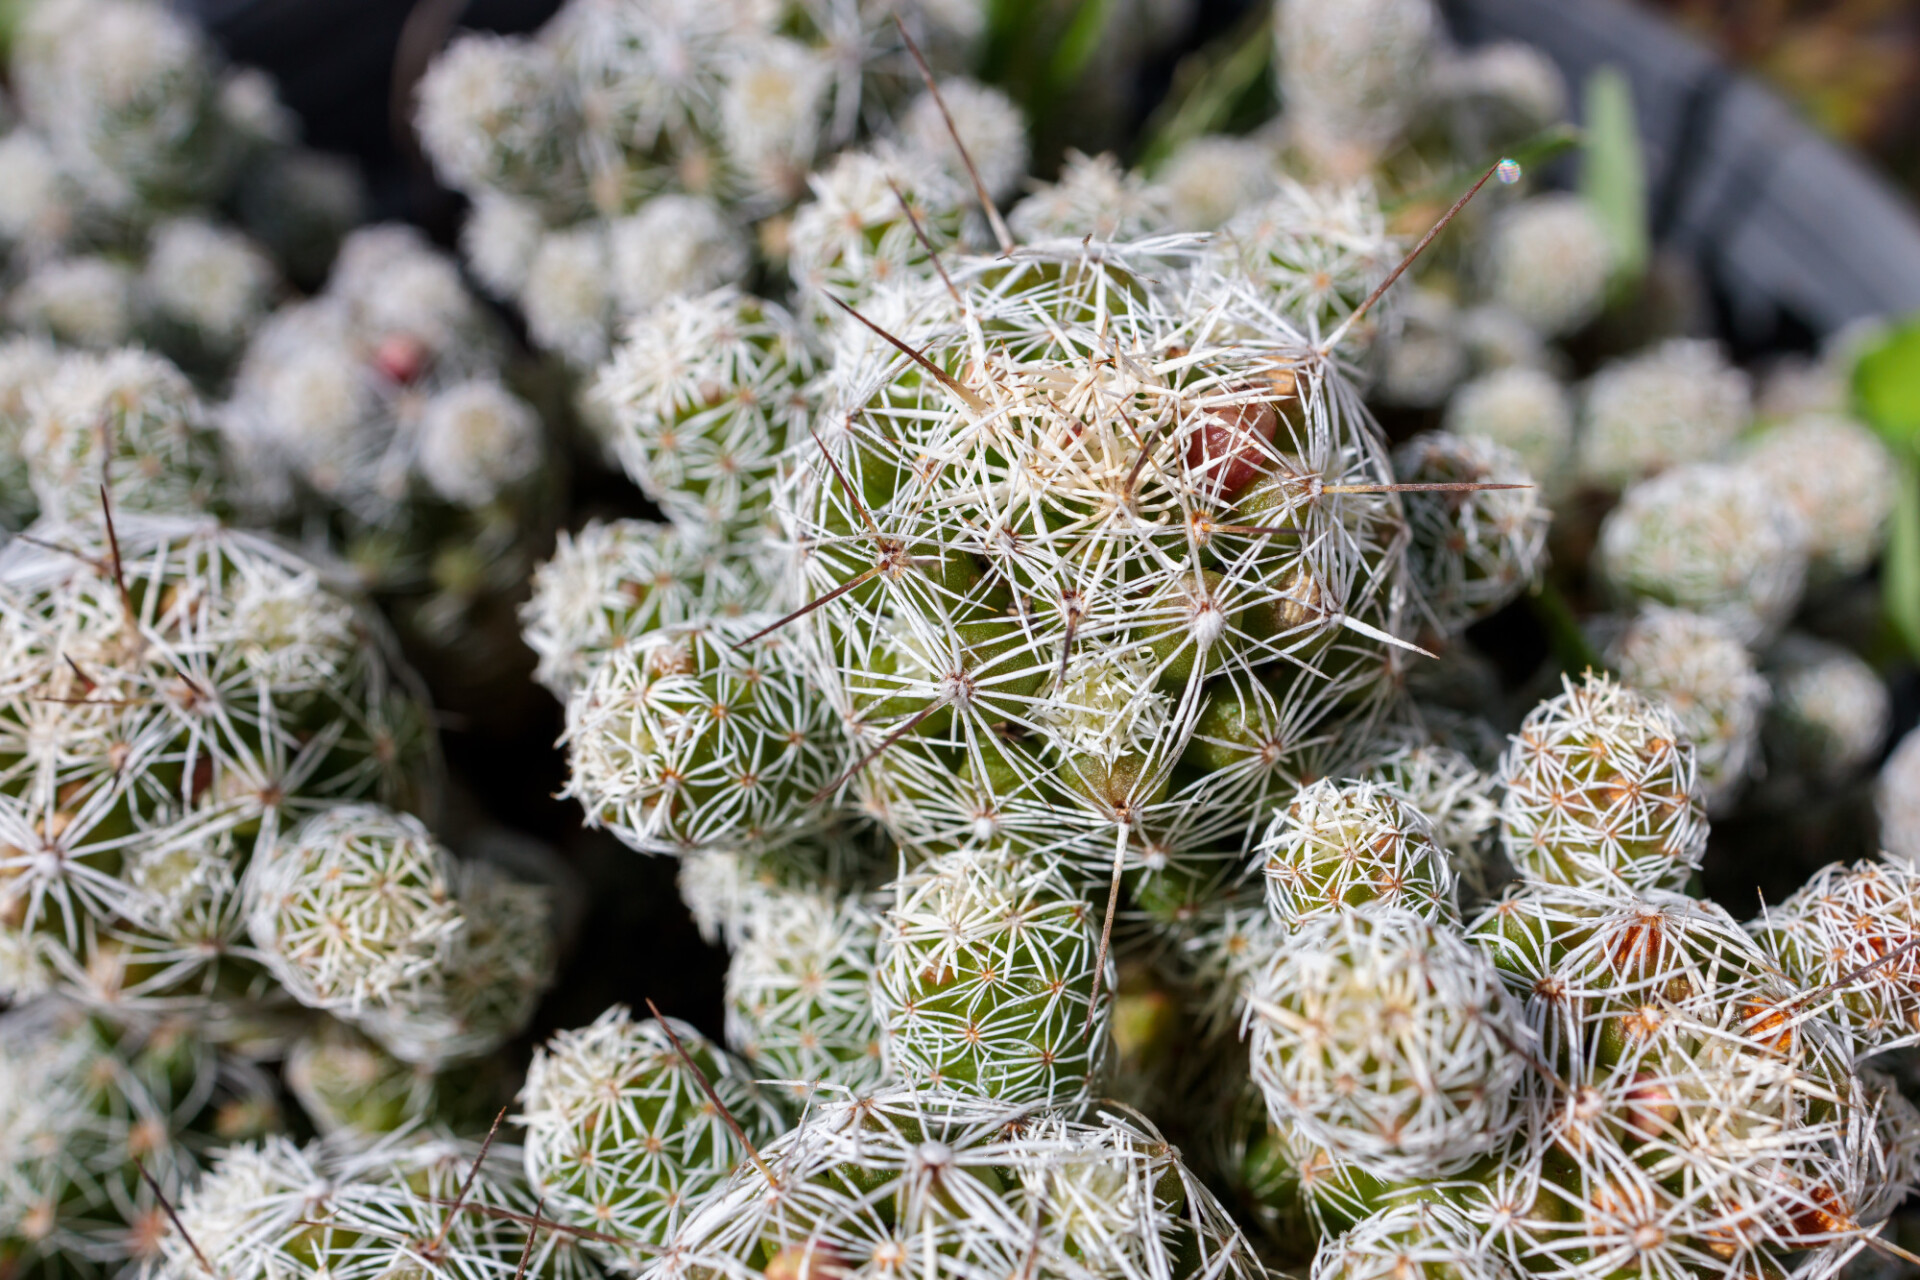 Gymnocalycium saglionis cactus